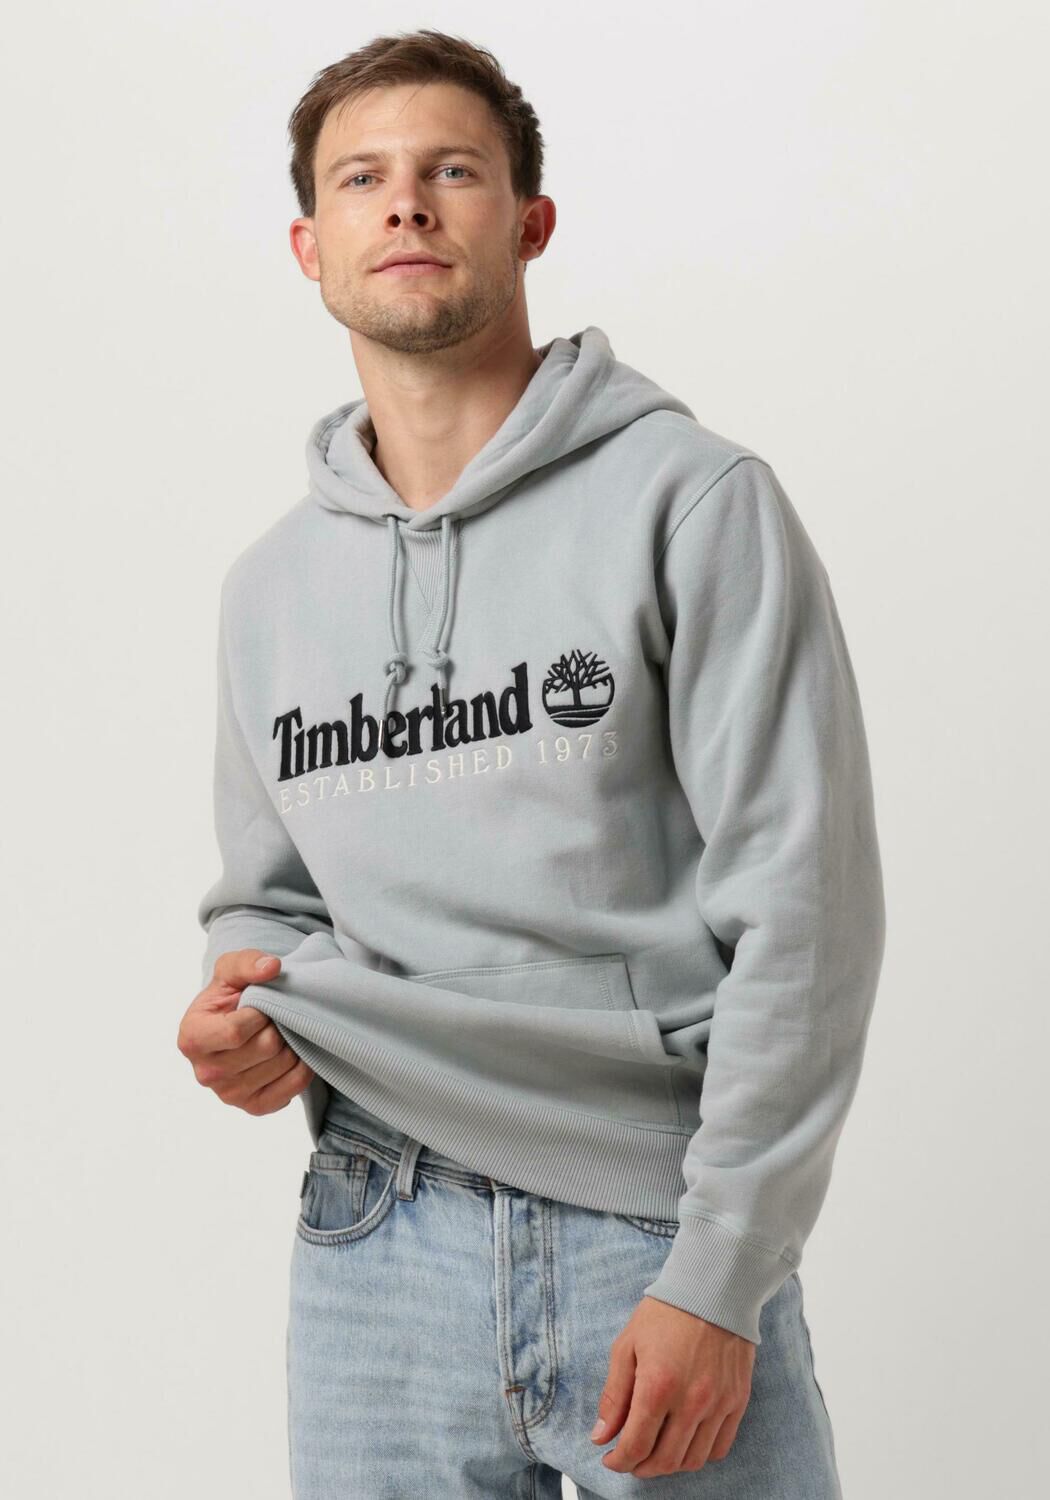 Timberland Sweater 50th Anniversary Est. 1973 Hoodie BB Sweatshirt Regular